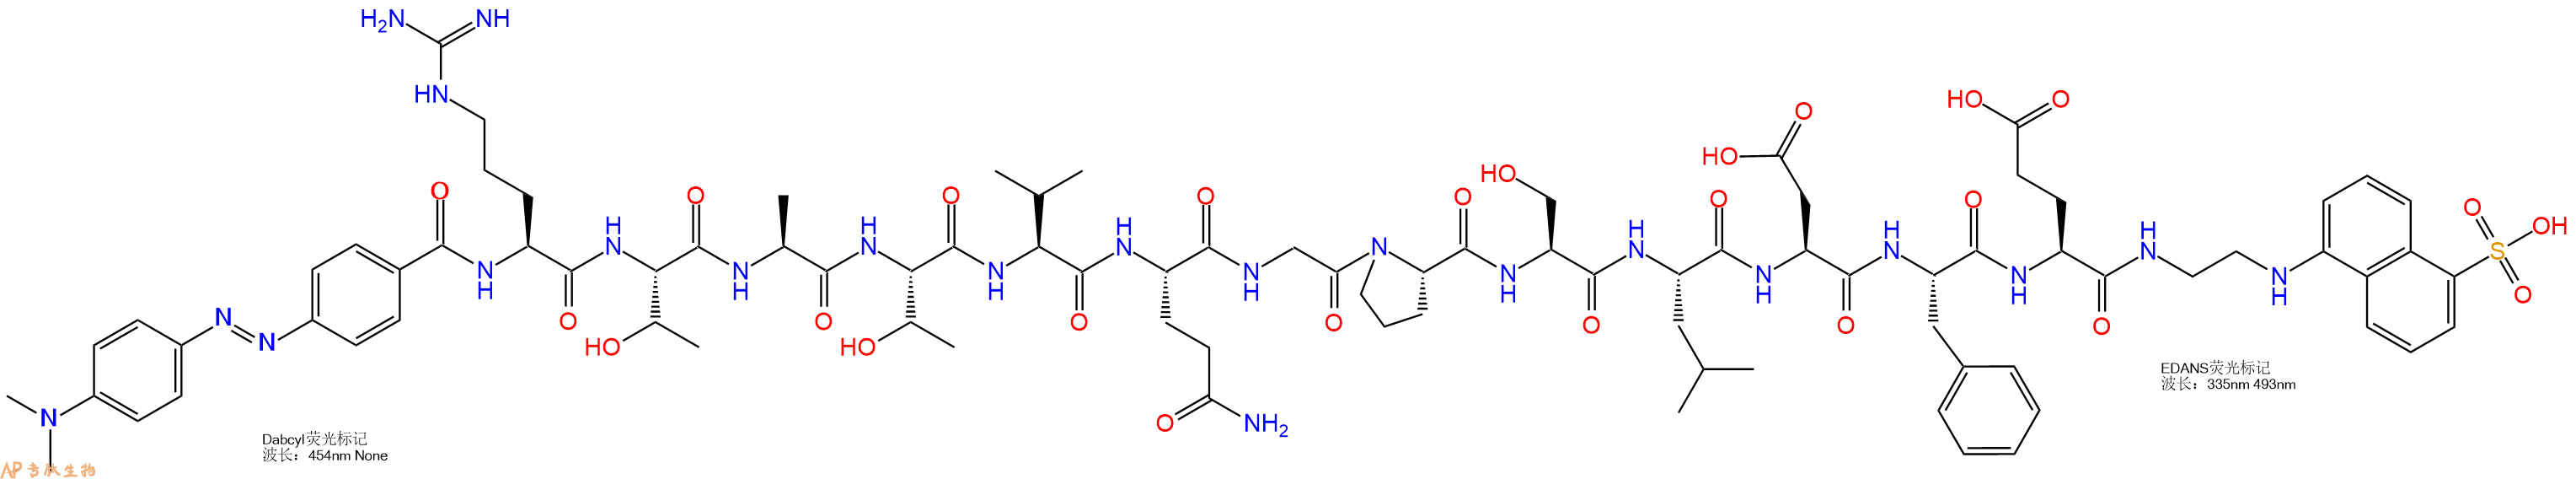 专肽生物产品DABCYL-Arg-Thr-Ala-Thr-Val-Gln-Gly-Pro-Ser-Leu-Asp